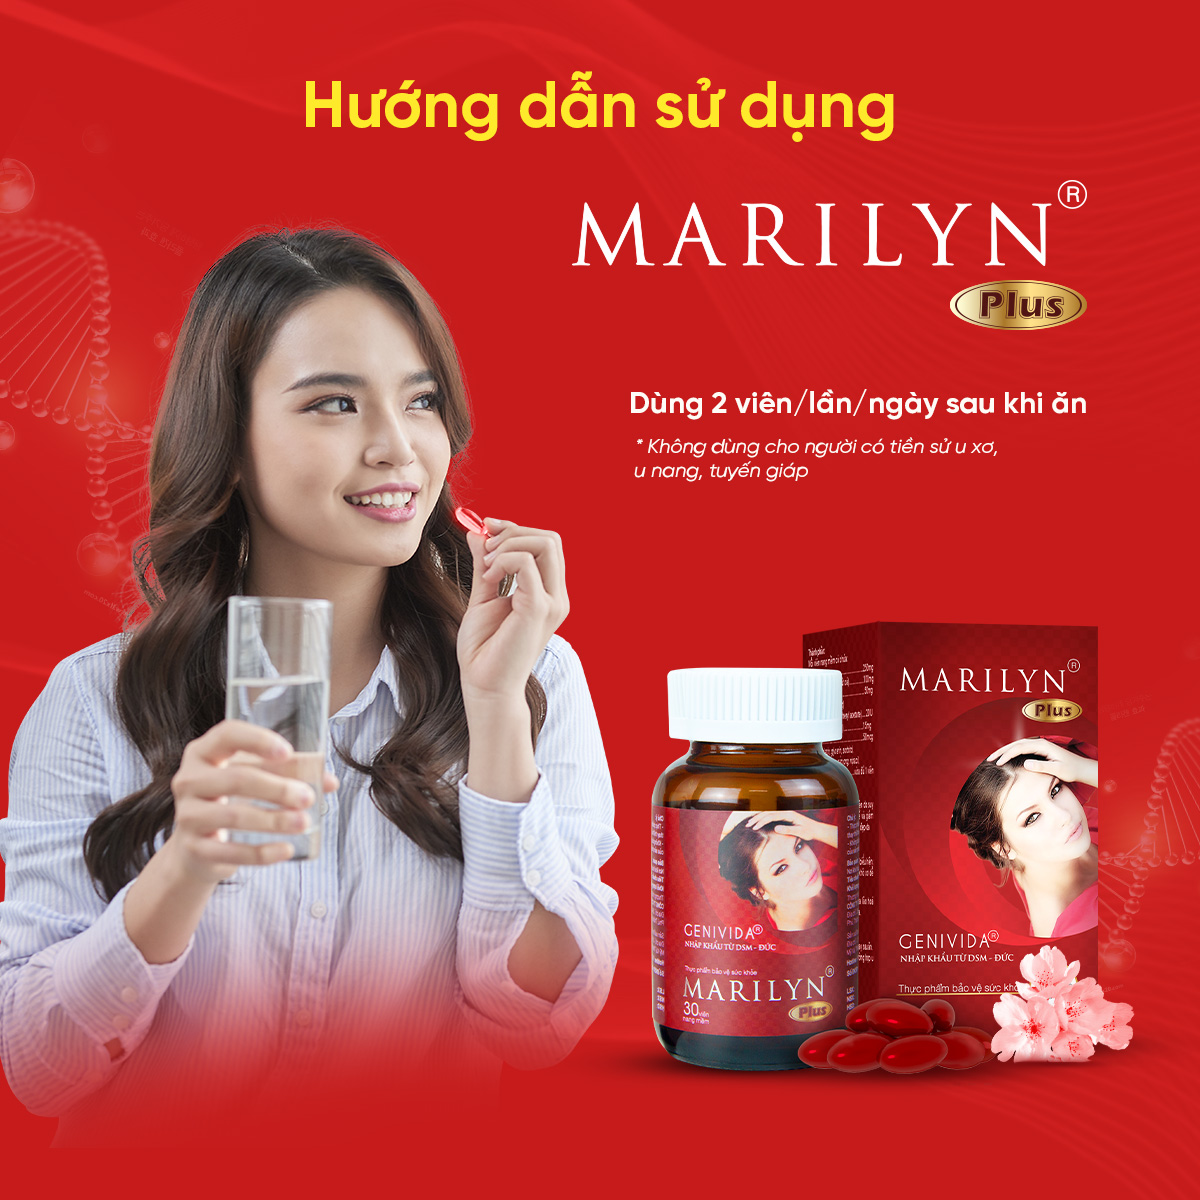 Viên Uống Cân Bằng Nội Tiết Tố, Cải Thiện Sinh Lý Nữ Marilyn (Hộp 30 viên)